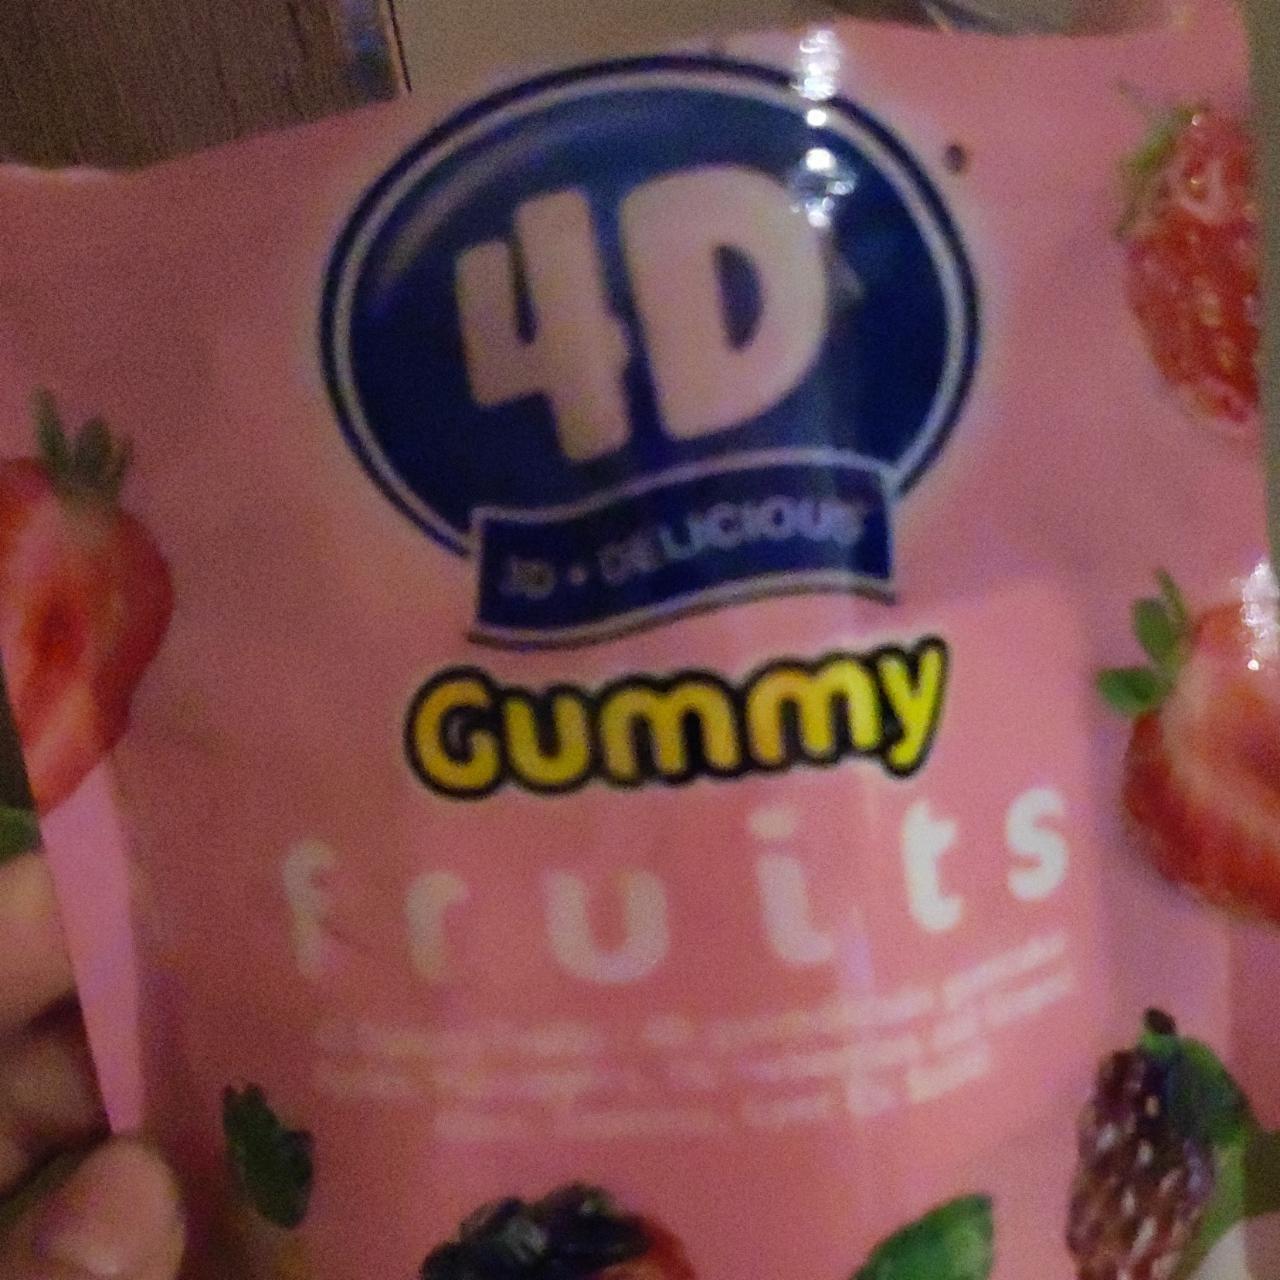 Képek - 4D gummy fruits